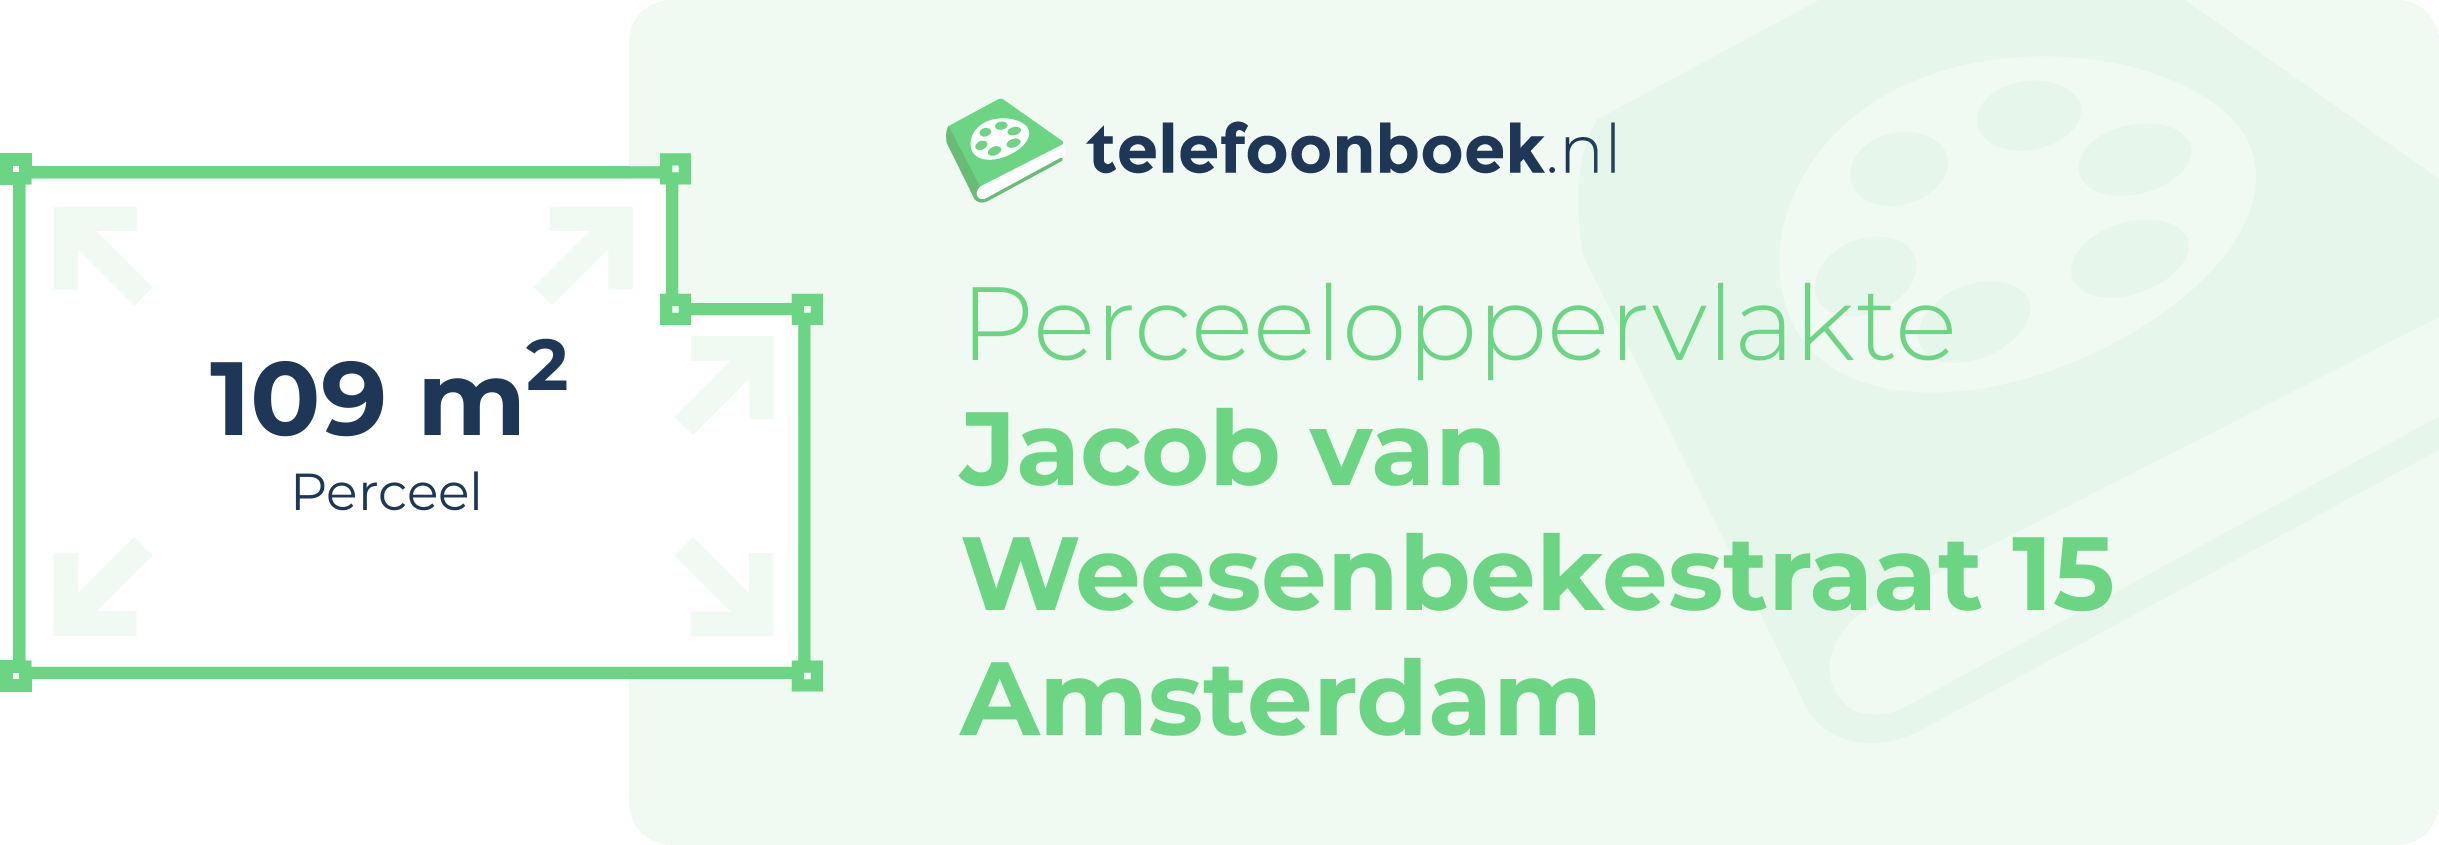 Perceeloppervlakte Jacob Van Weesenbekestraat 15 Amsterdam